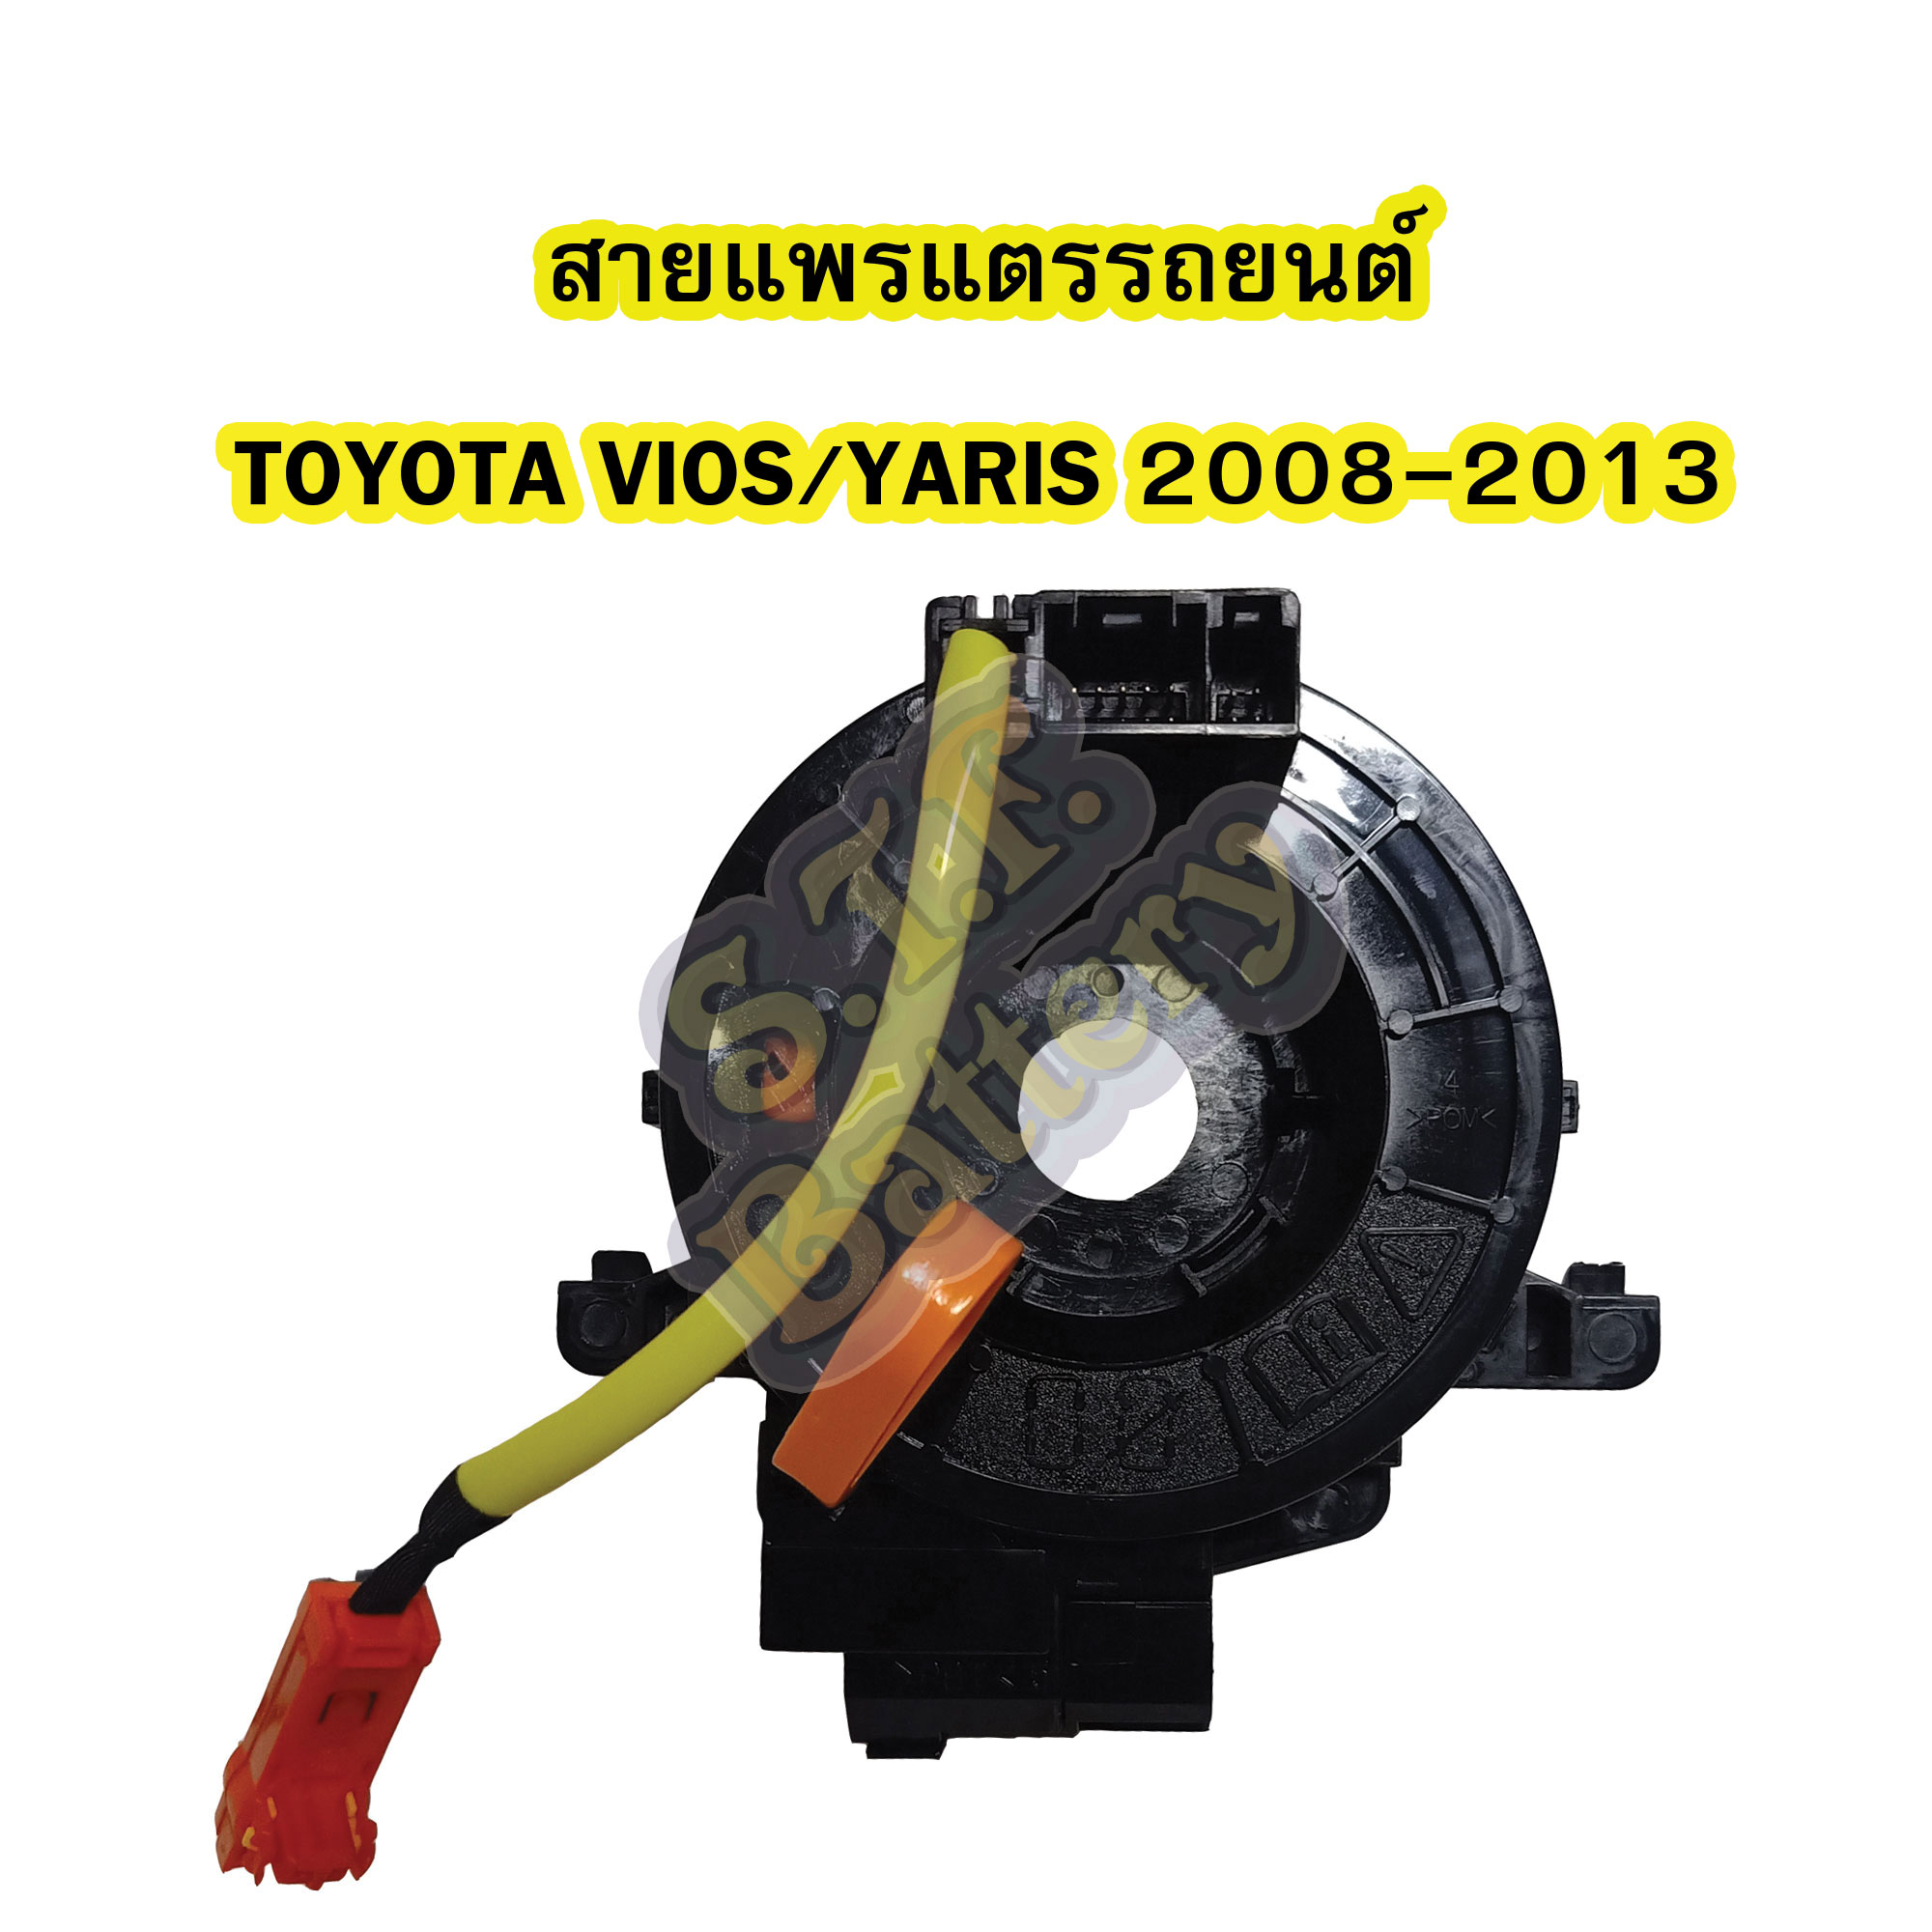 สายแพรแตร/ลานคอพวงมาลัย สไปร่อน สำหรับรถยนต์โตโยต้า วีออส (TOYOTA VIOS) / โตโยต้า ยาริส (TOYOTA YARIS) ปี 2008-2013